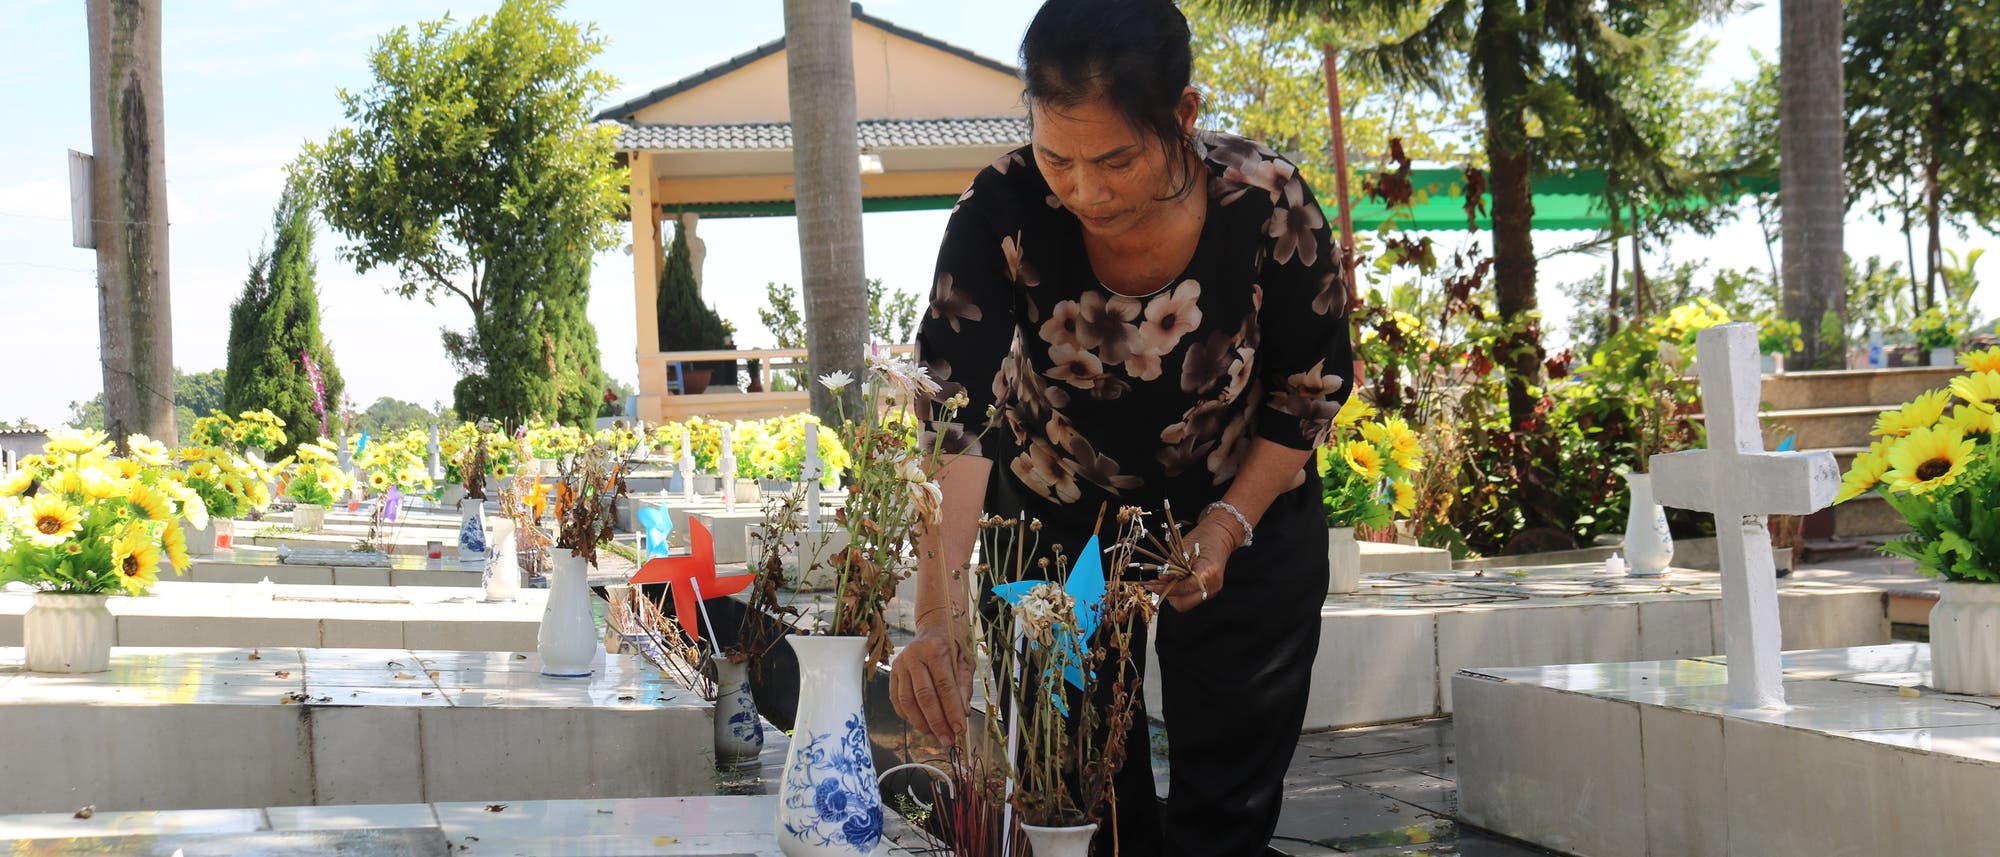 Nguyen Thi Nhiem zündet auf einem Friedhof Räucherstäbchen an. Sie hat den Friedhof 2007 für ungeborene Kinder eingerichtet, um diesen eine würdige Ruhestätte zu bieten.